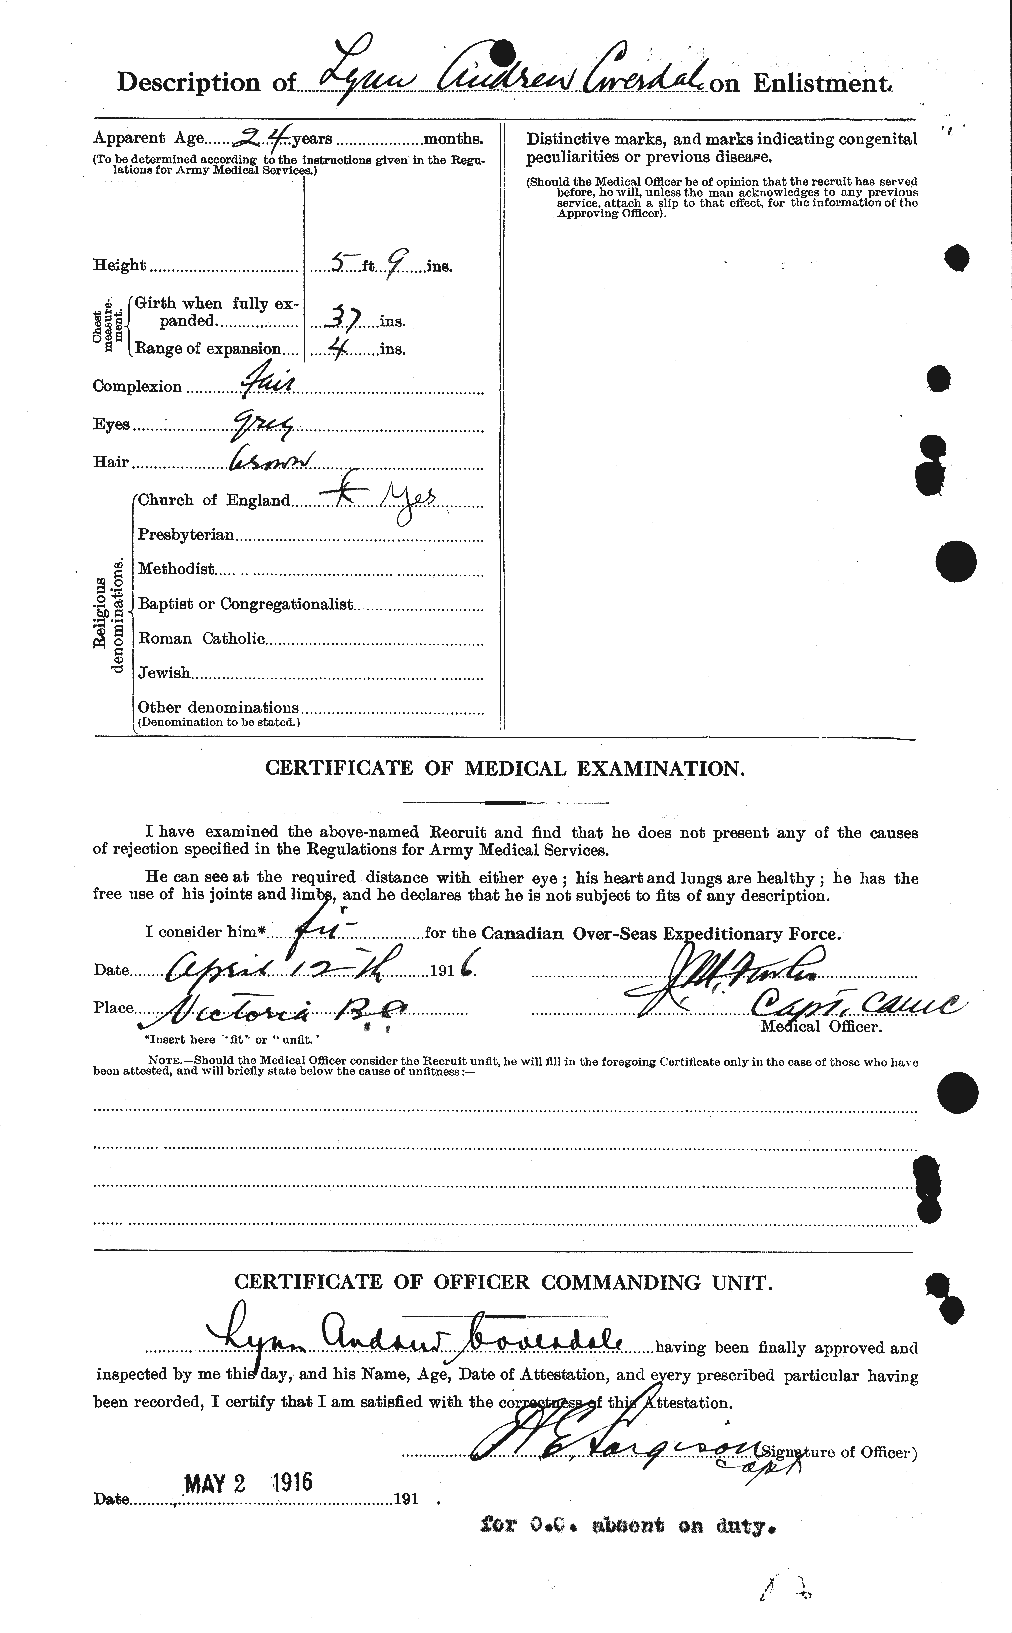 Dossiers du Personnel de la Première Guerre mondiale - CEC 059455b